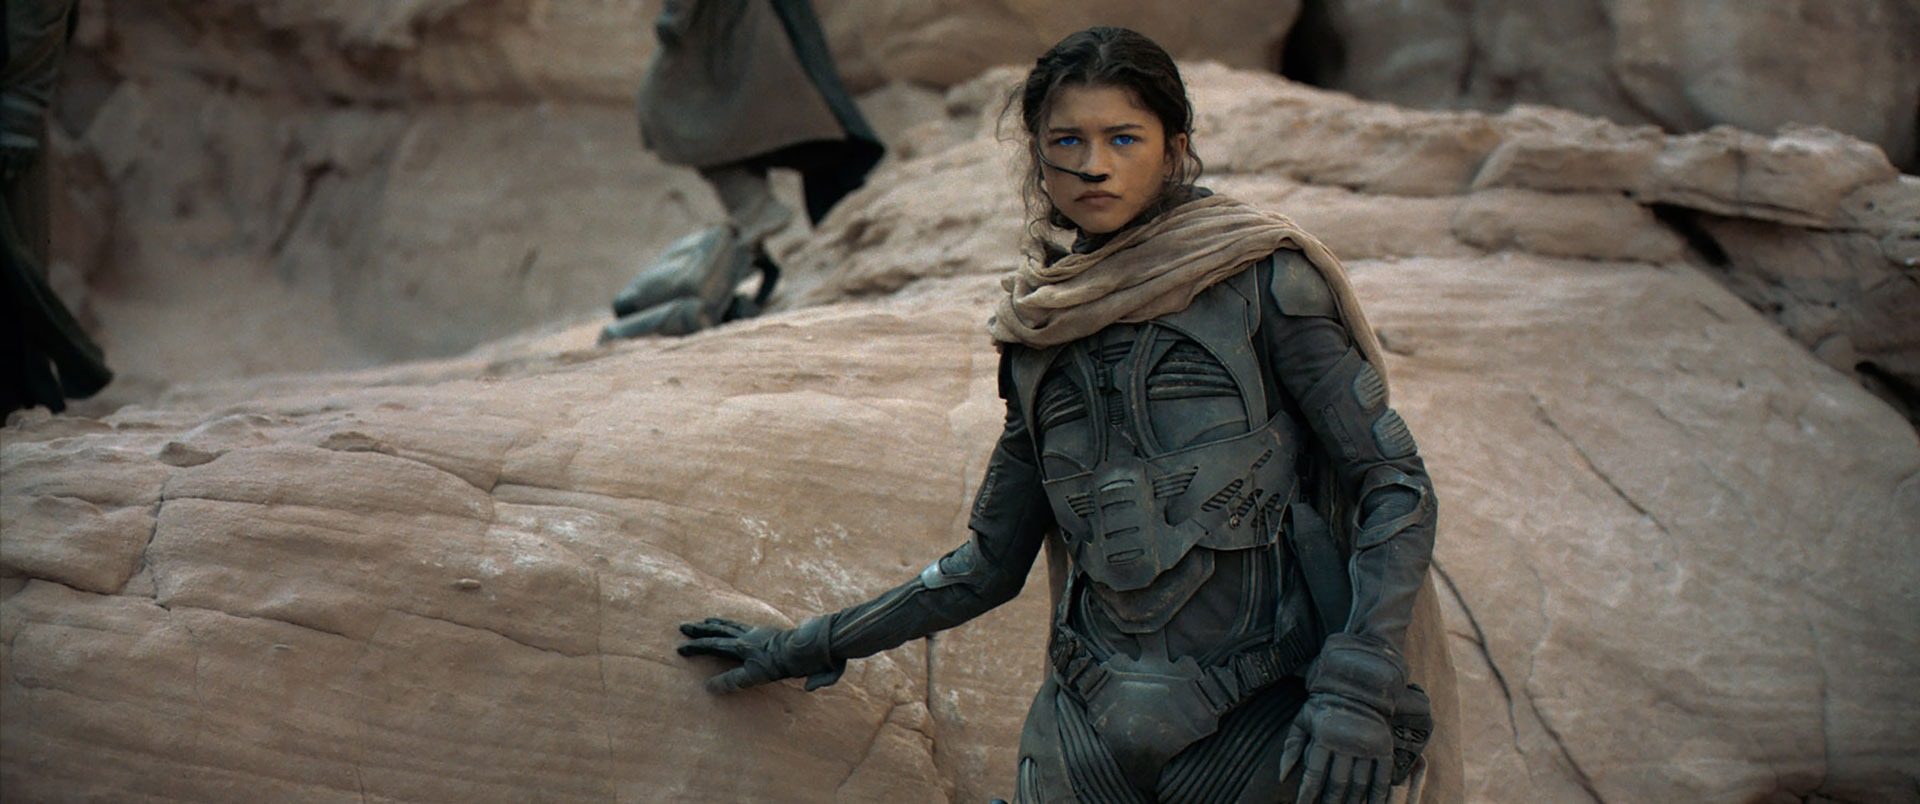 Chani, played by Zendaya, in Denis Villeneuve's Dune movie (2021).